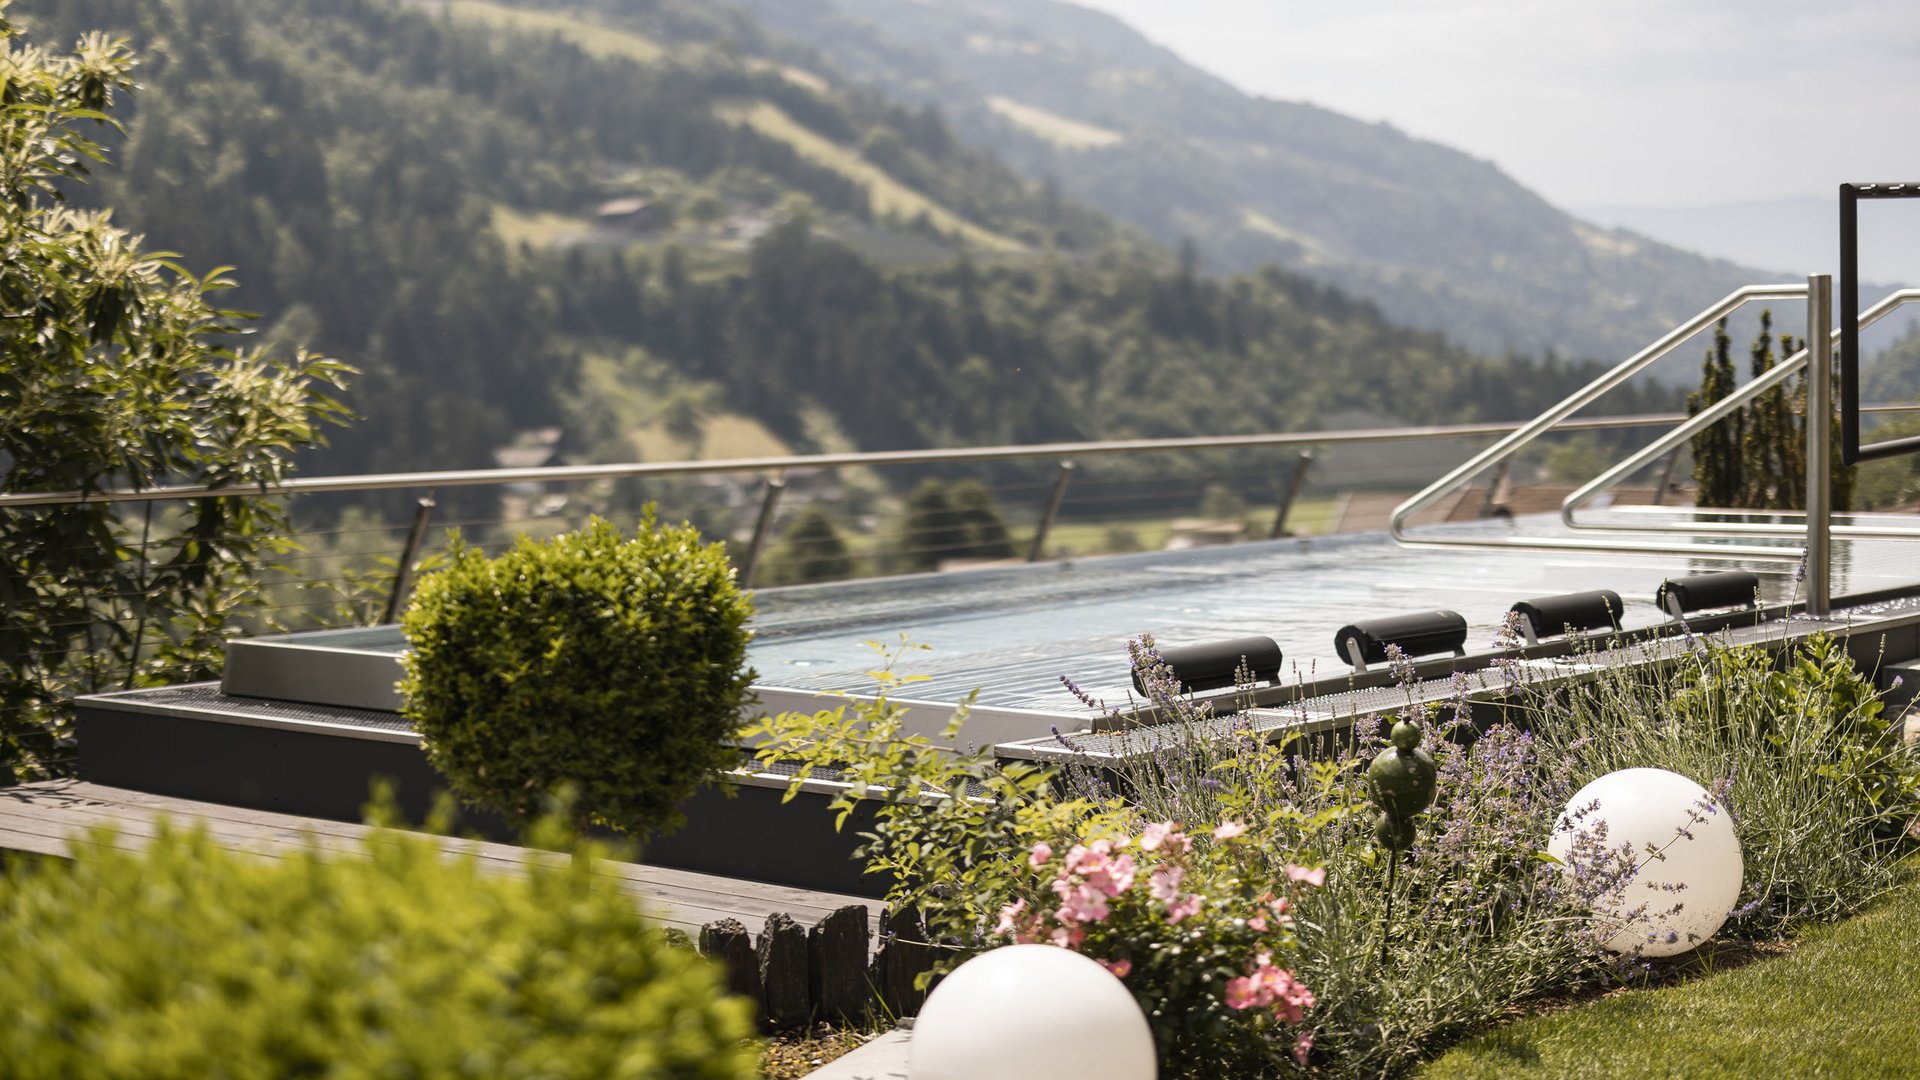 Das Alpenschlössel: Ihr Hotel mit Infinity Pool in Südtirol